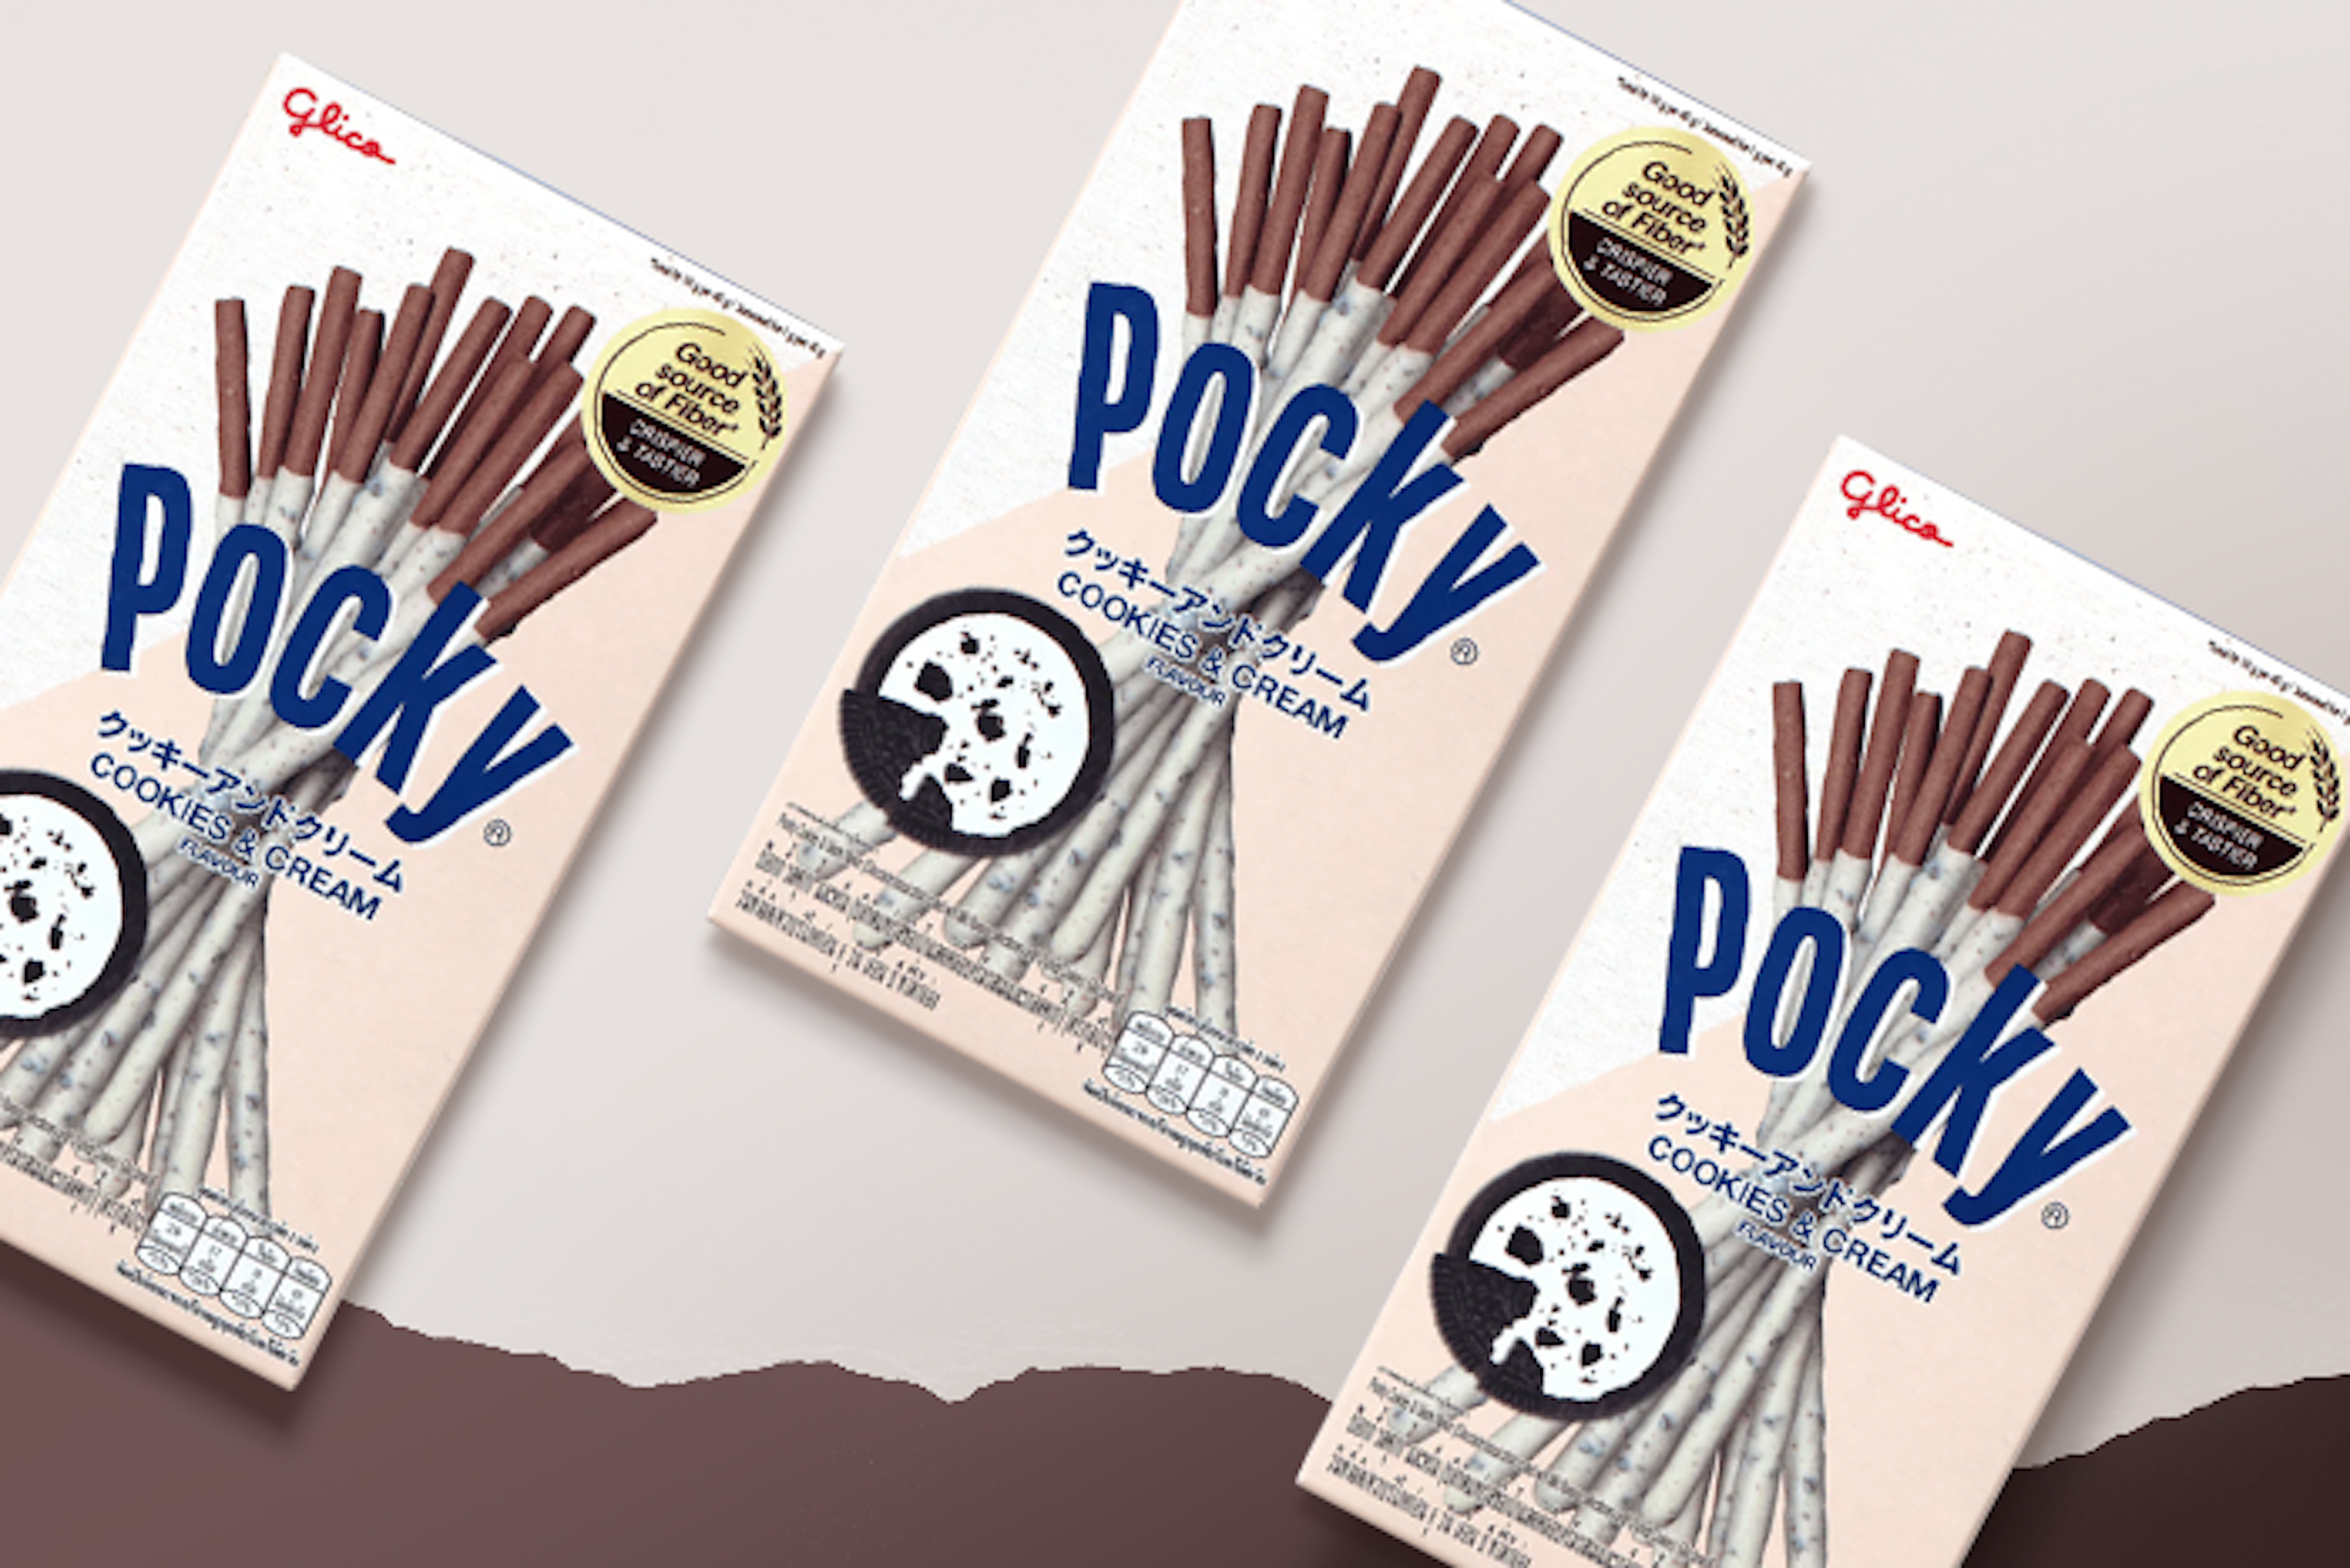 Ein Pocky Stick, umhüllt mit Cookies & Cream, detailreich präsentiert.